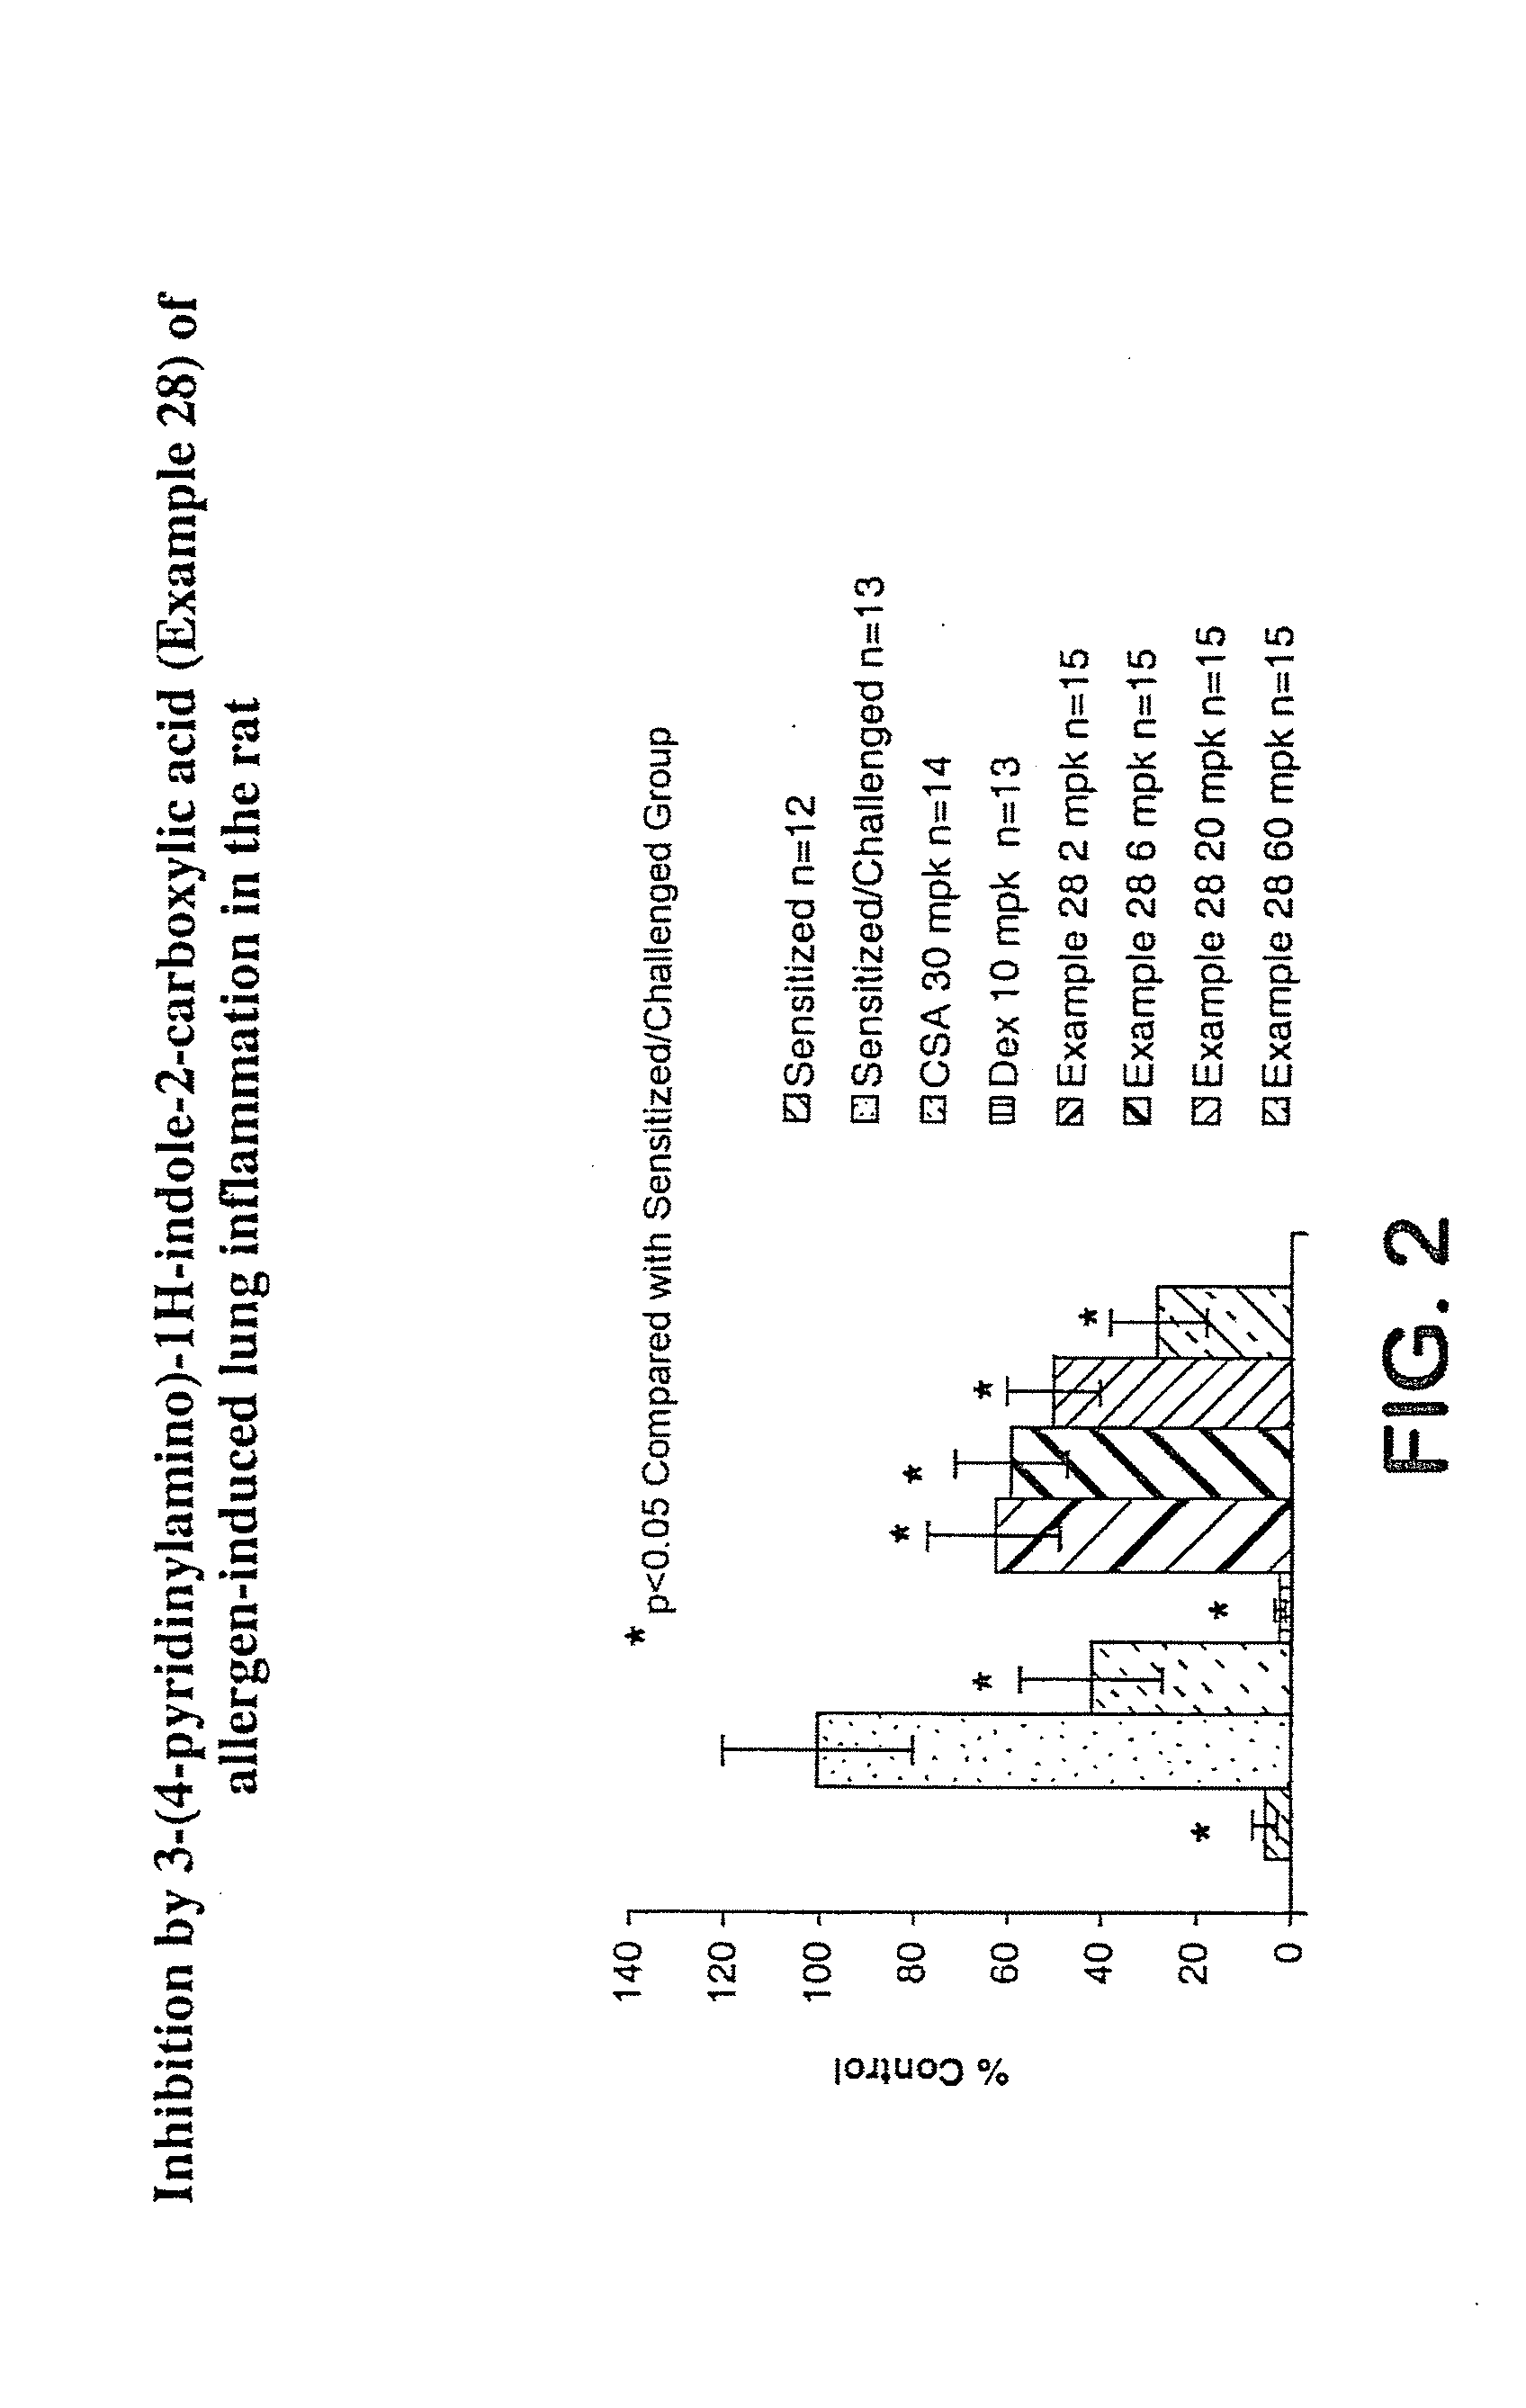 Interleukin-4 gene expression inhibitors